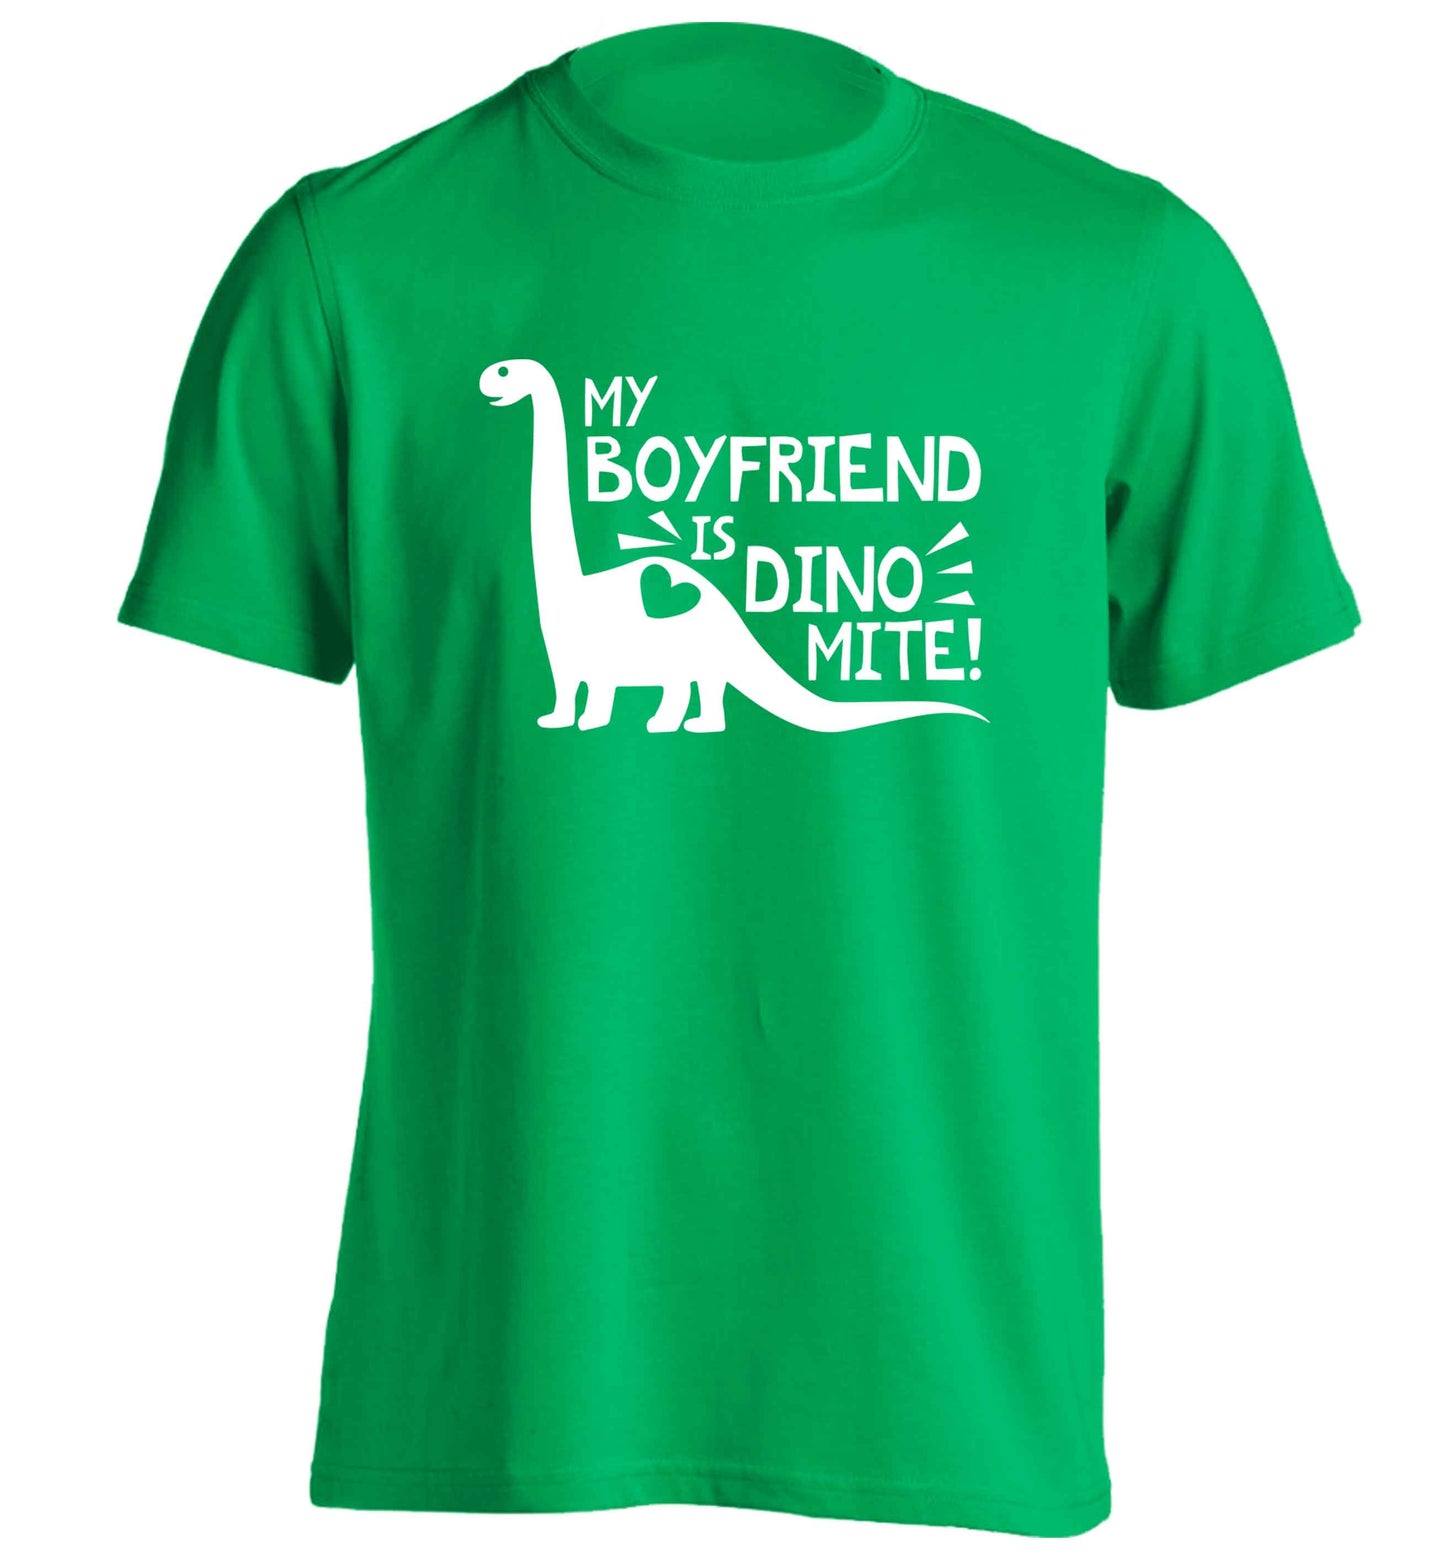 My boyfriend is dinomite! adults unisex green Tshirt 2XL